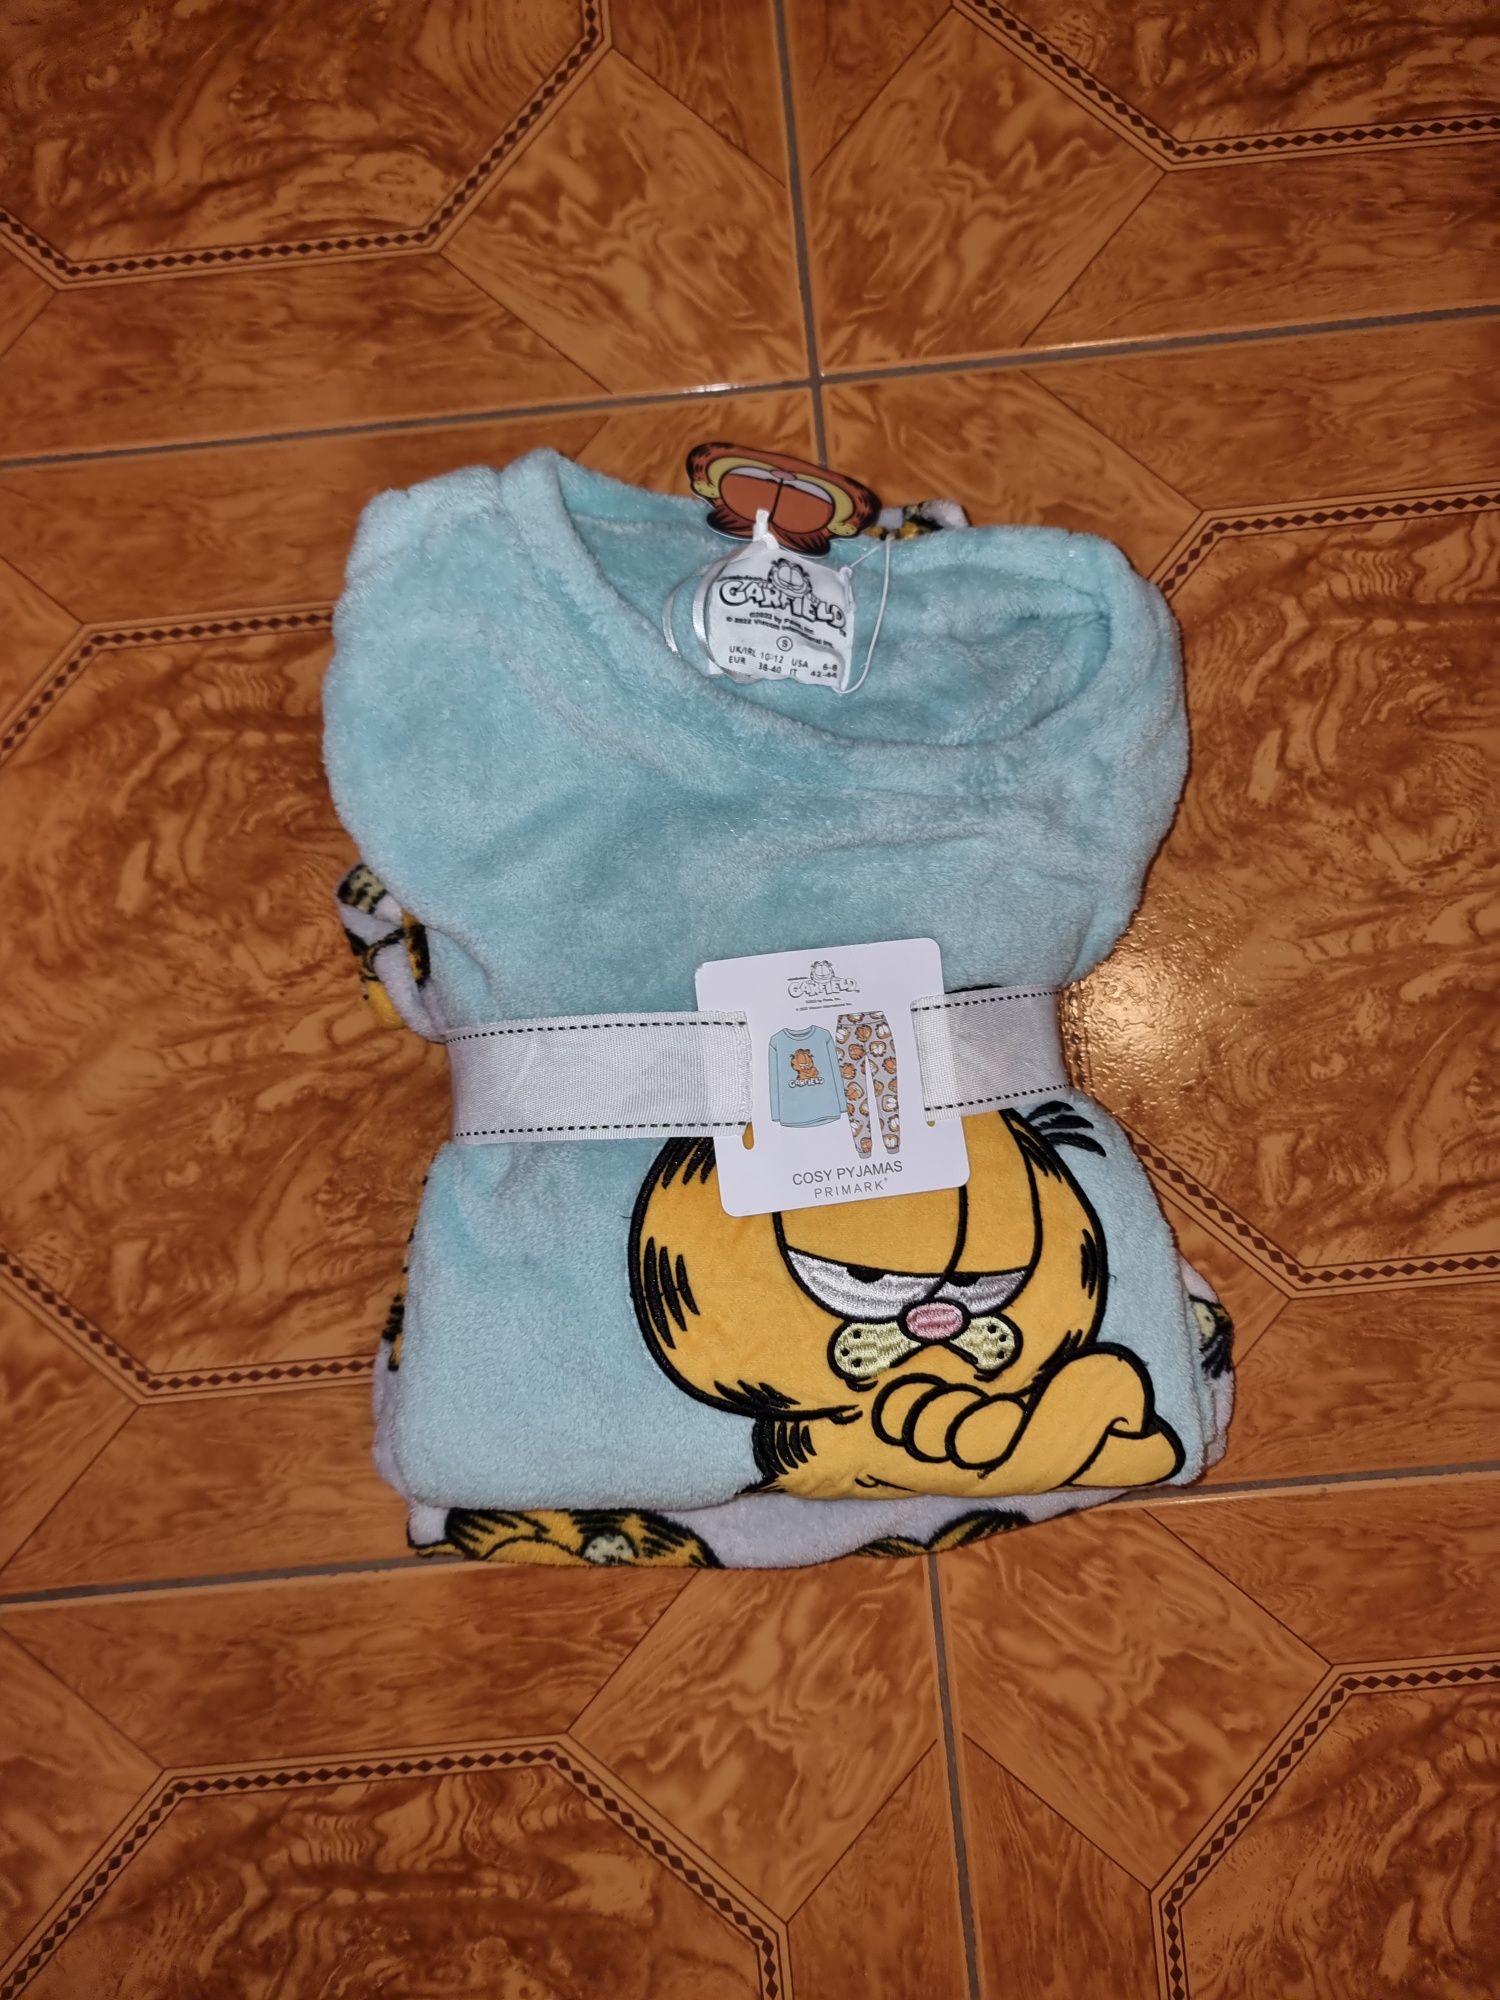 Pijama polar do Garfield para senhora Tamanho S (novo)